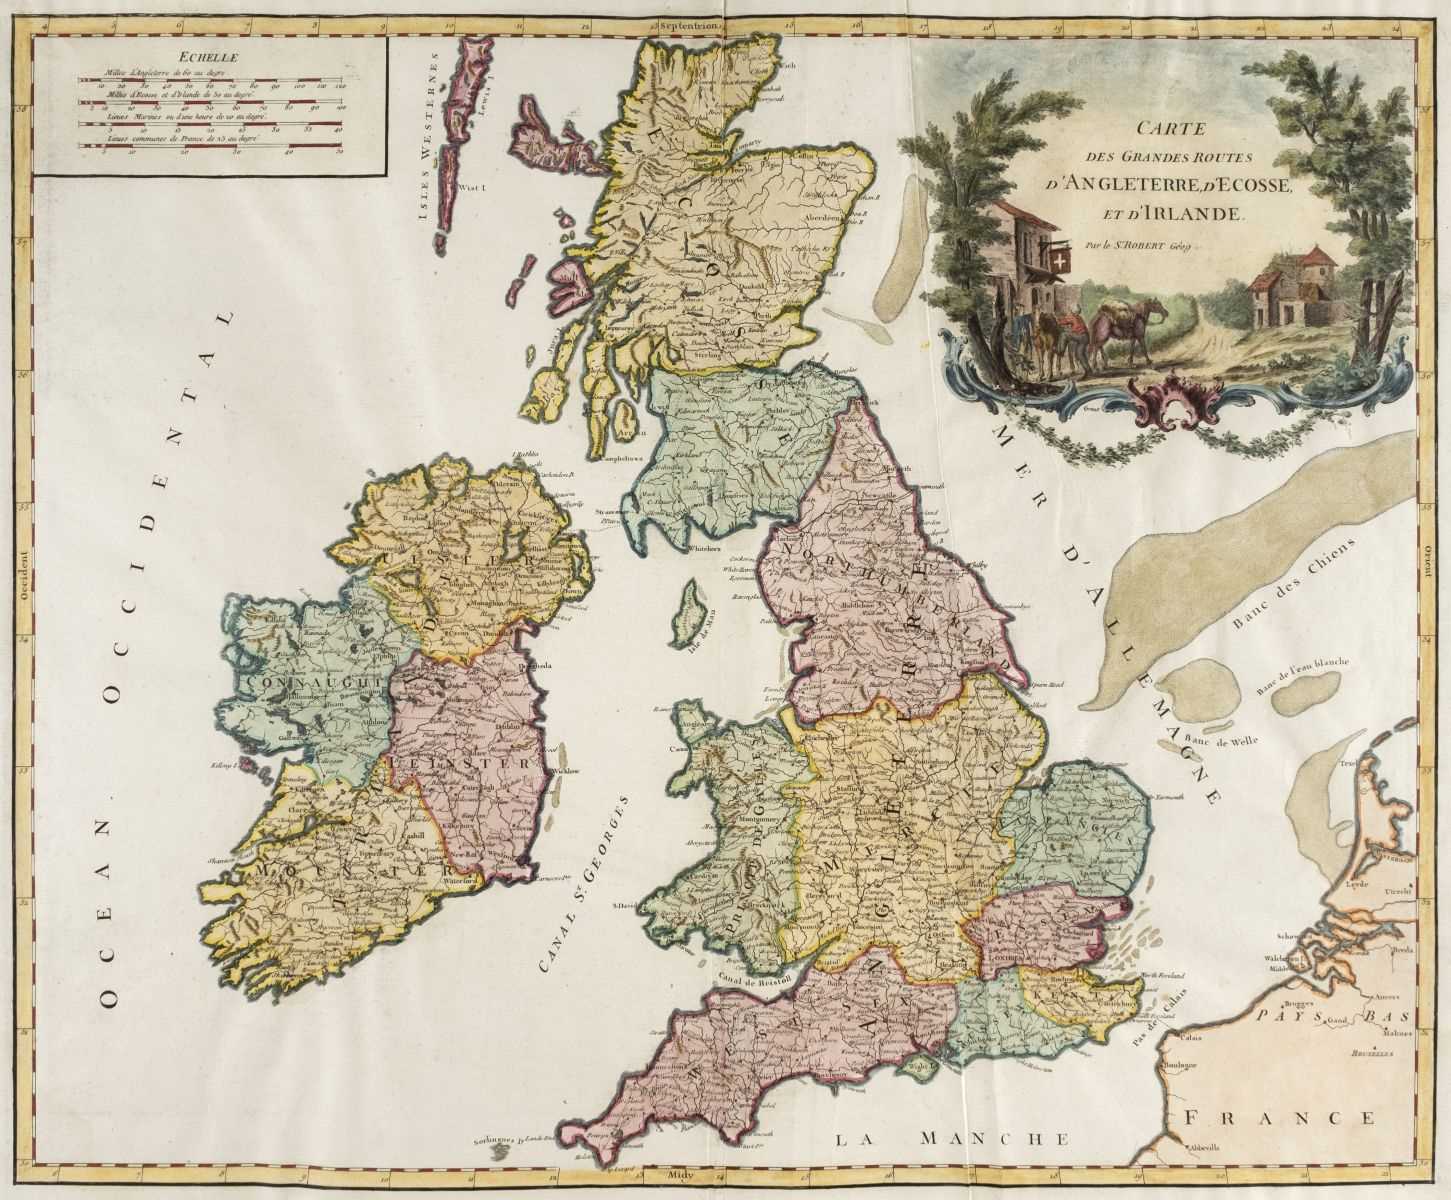 Lot 14 - British Isles. De Vaugondy (Robert), Carte..., D'Angleterre..., circa 1778